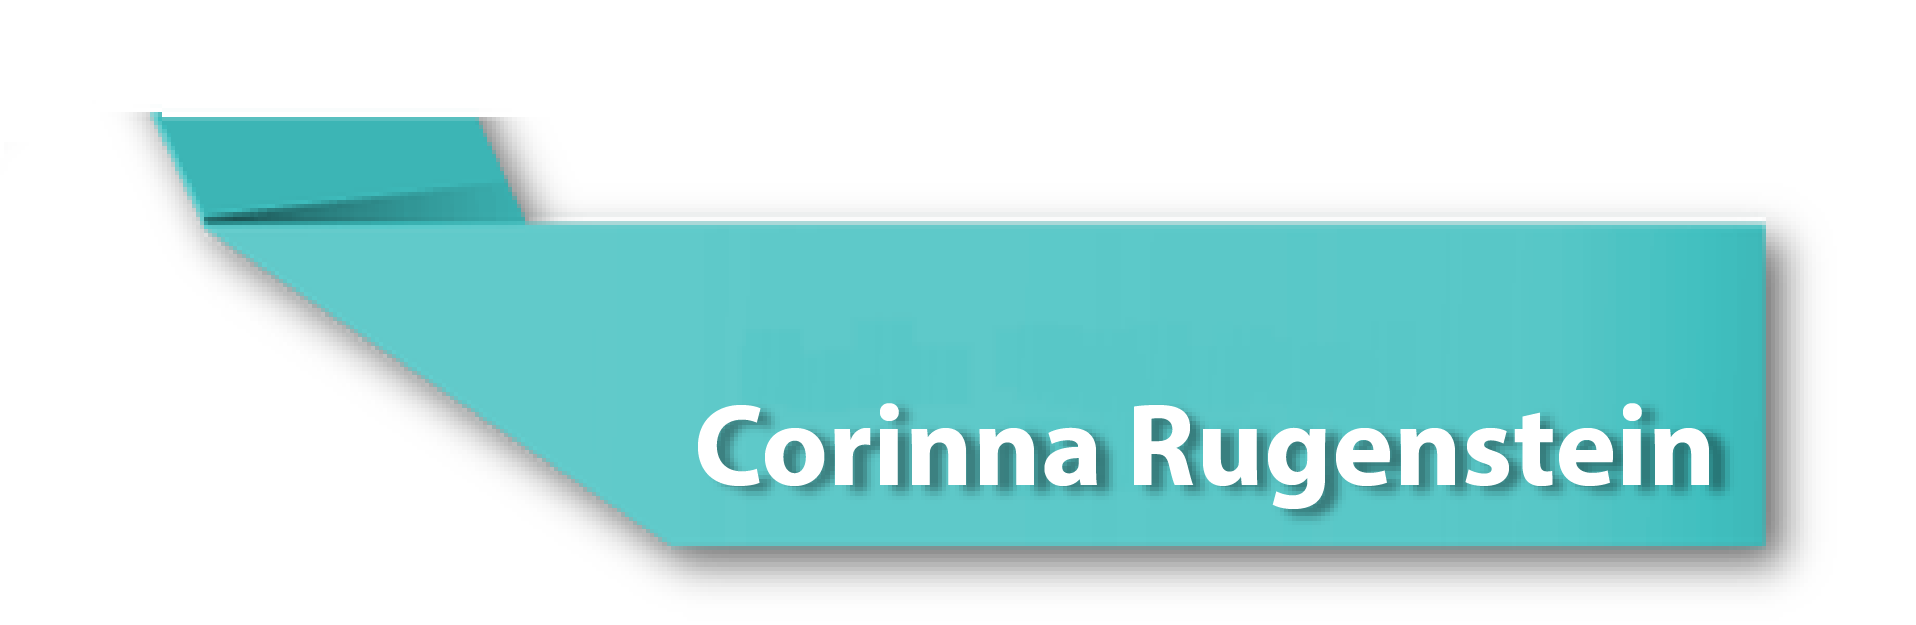 Corinna Rugenstein